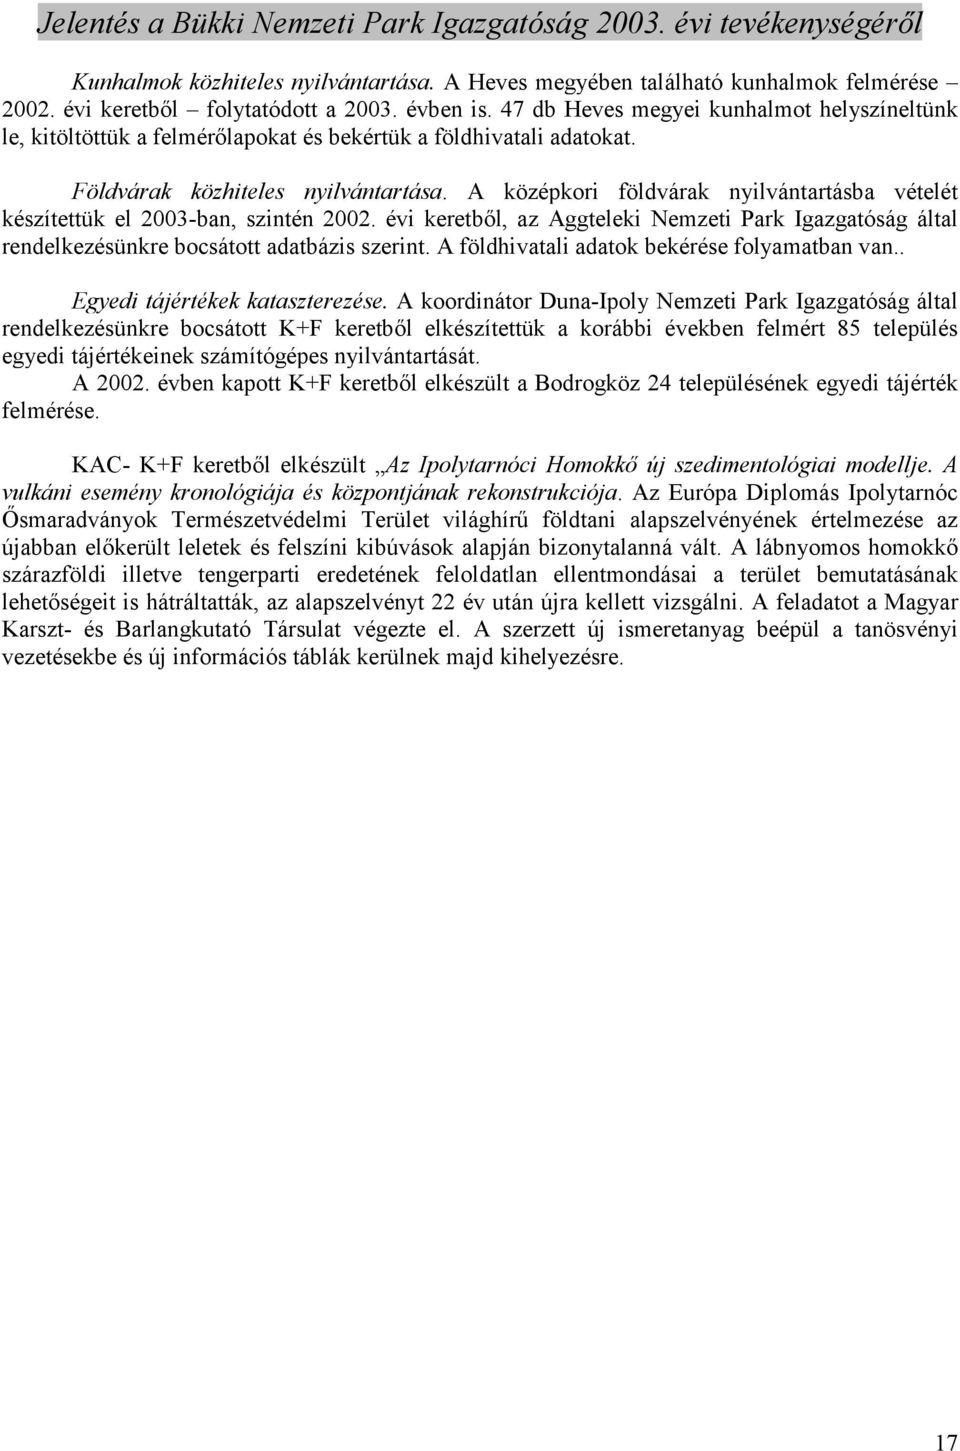 A középkori földvárak nyilvántartásba vételét készítettük el 2003-ban, szintén 2002. évi keretbıl, az Aggteleki Nemzeti Park Igazgatóság által rendelkezésünkre bocsátott adatbázis szerint.